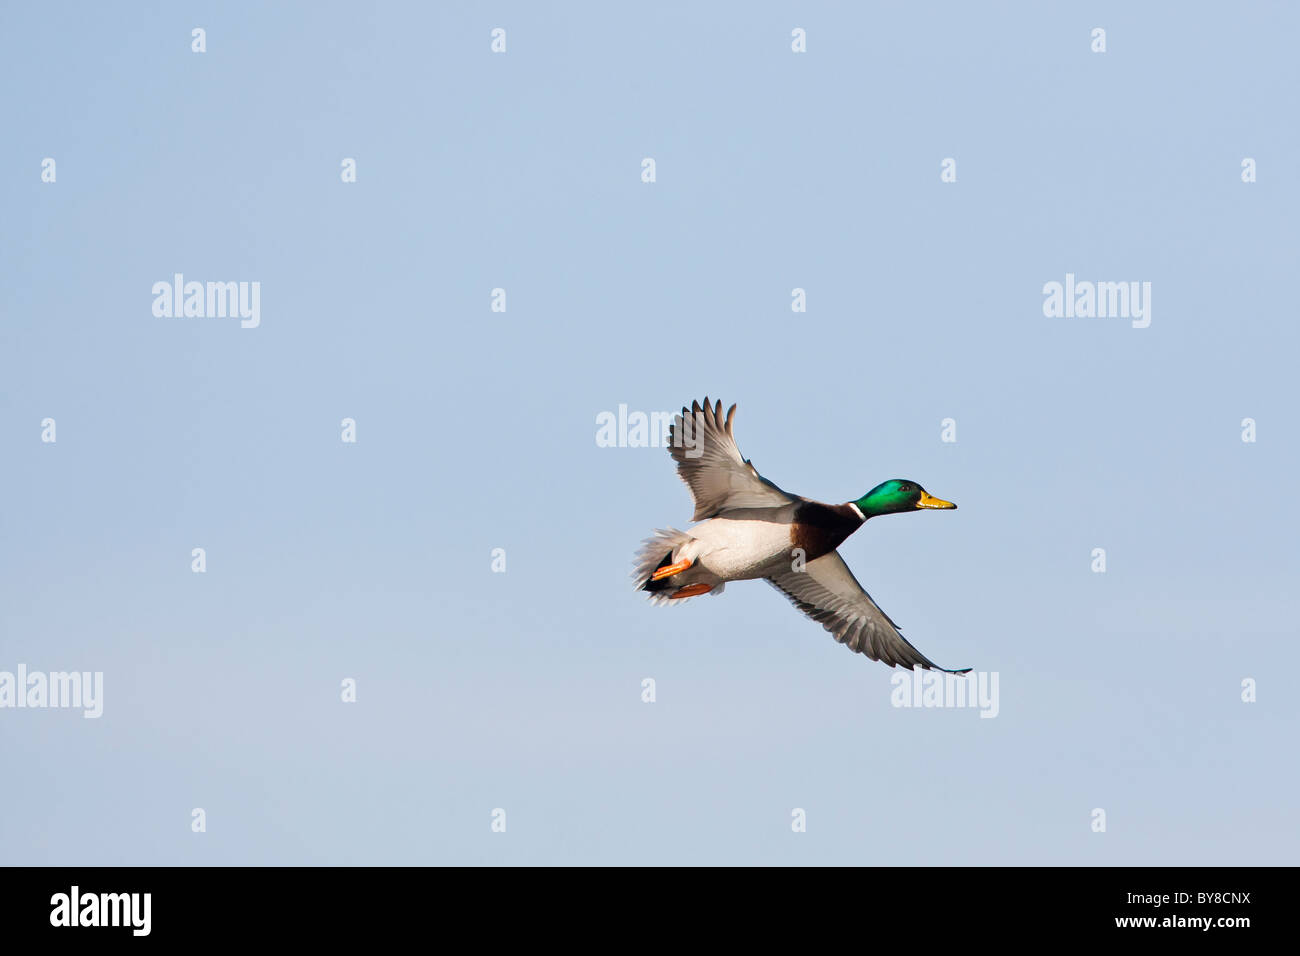 Male mallard duck in flight against a clear blue sky Stock Photo